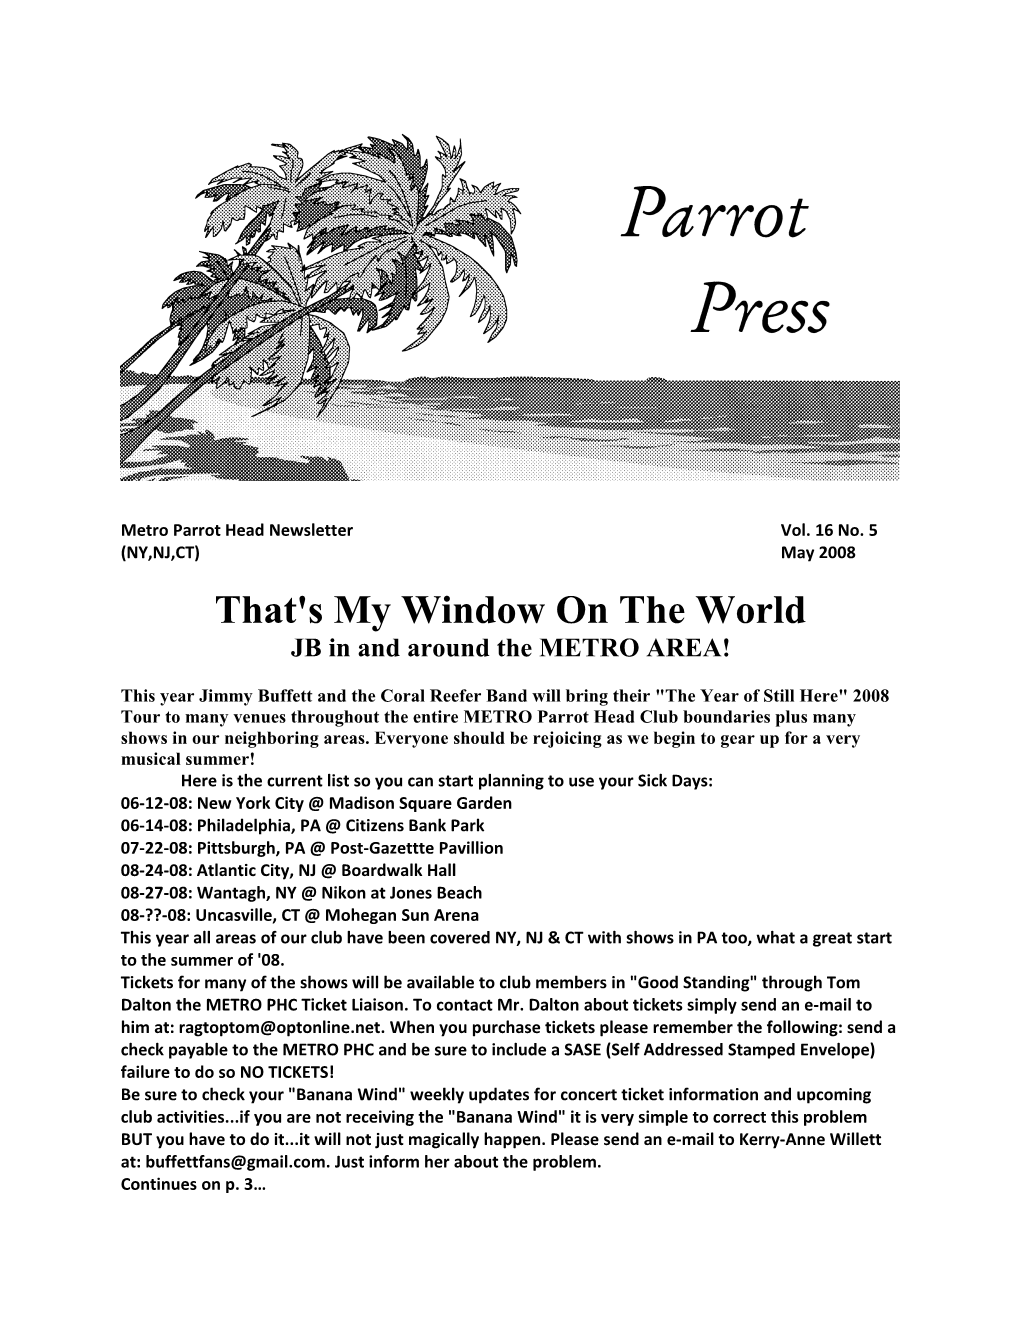 Metro Parrot Head Newsletter Vol. 16 No. 5